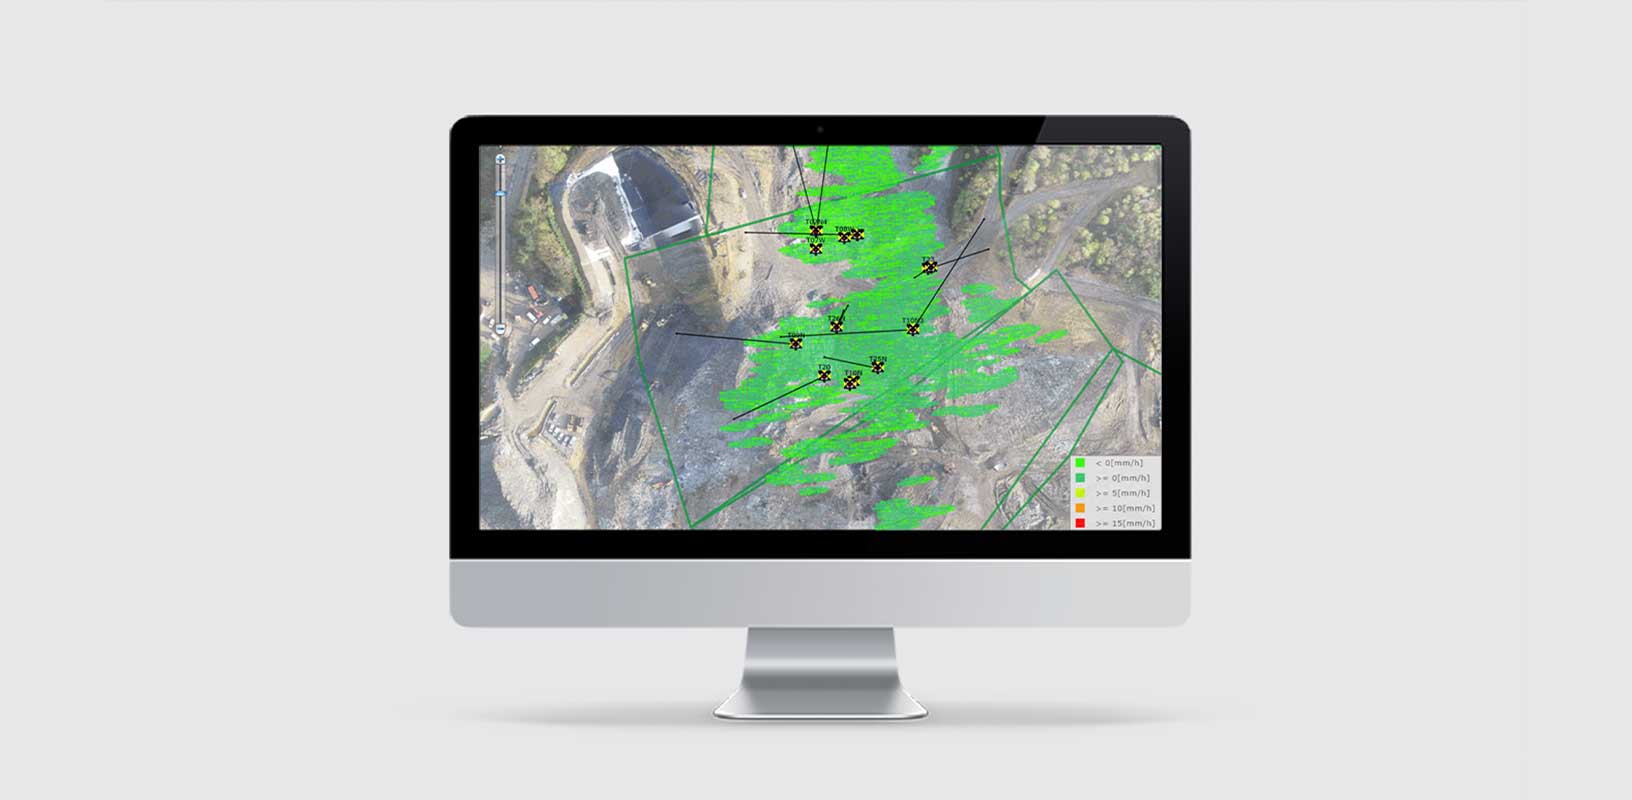 Dados de monitoramento de uma visão aérea de um cenário ambiental